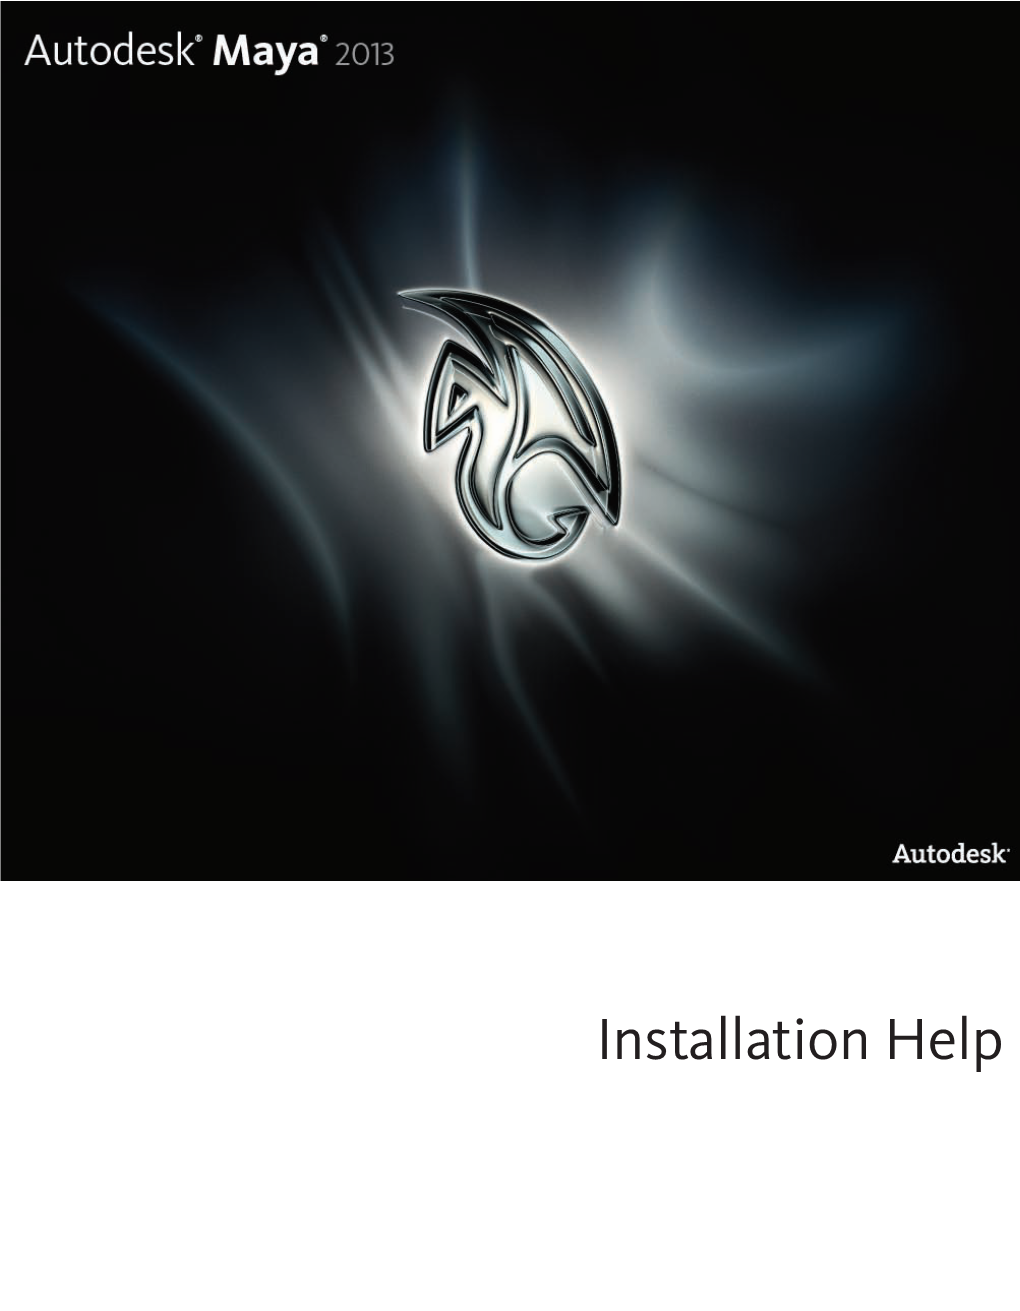 Installation Help ® ® Autodesk Maya 2013 © 2012 Autodesk, Inc